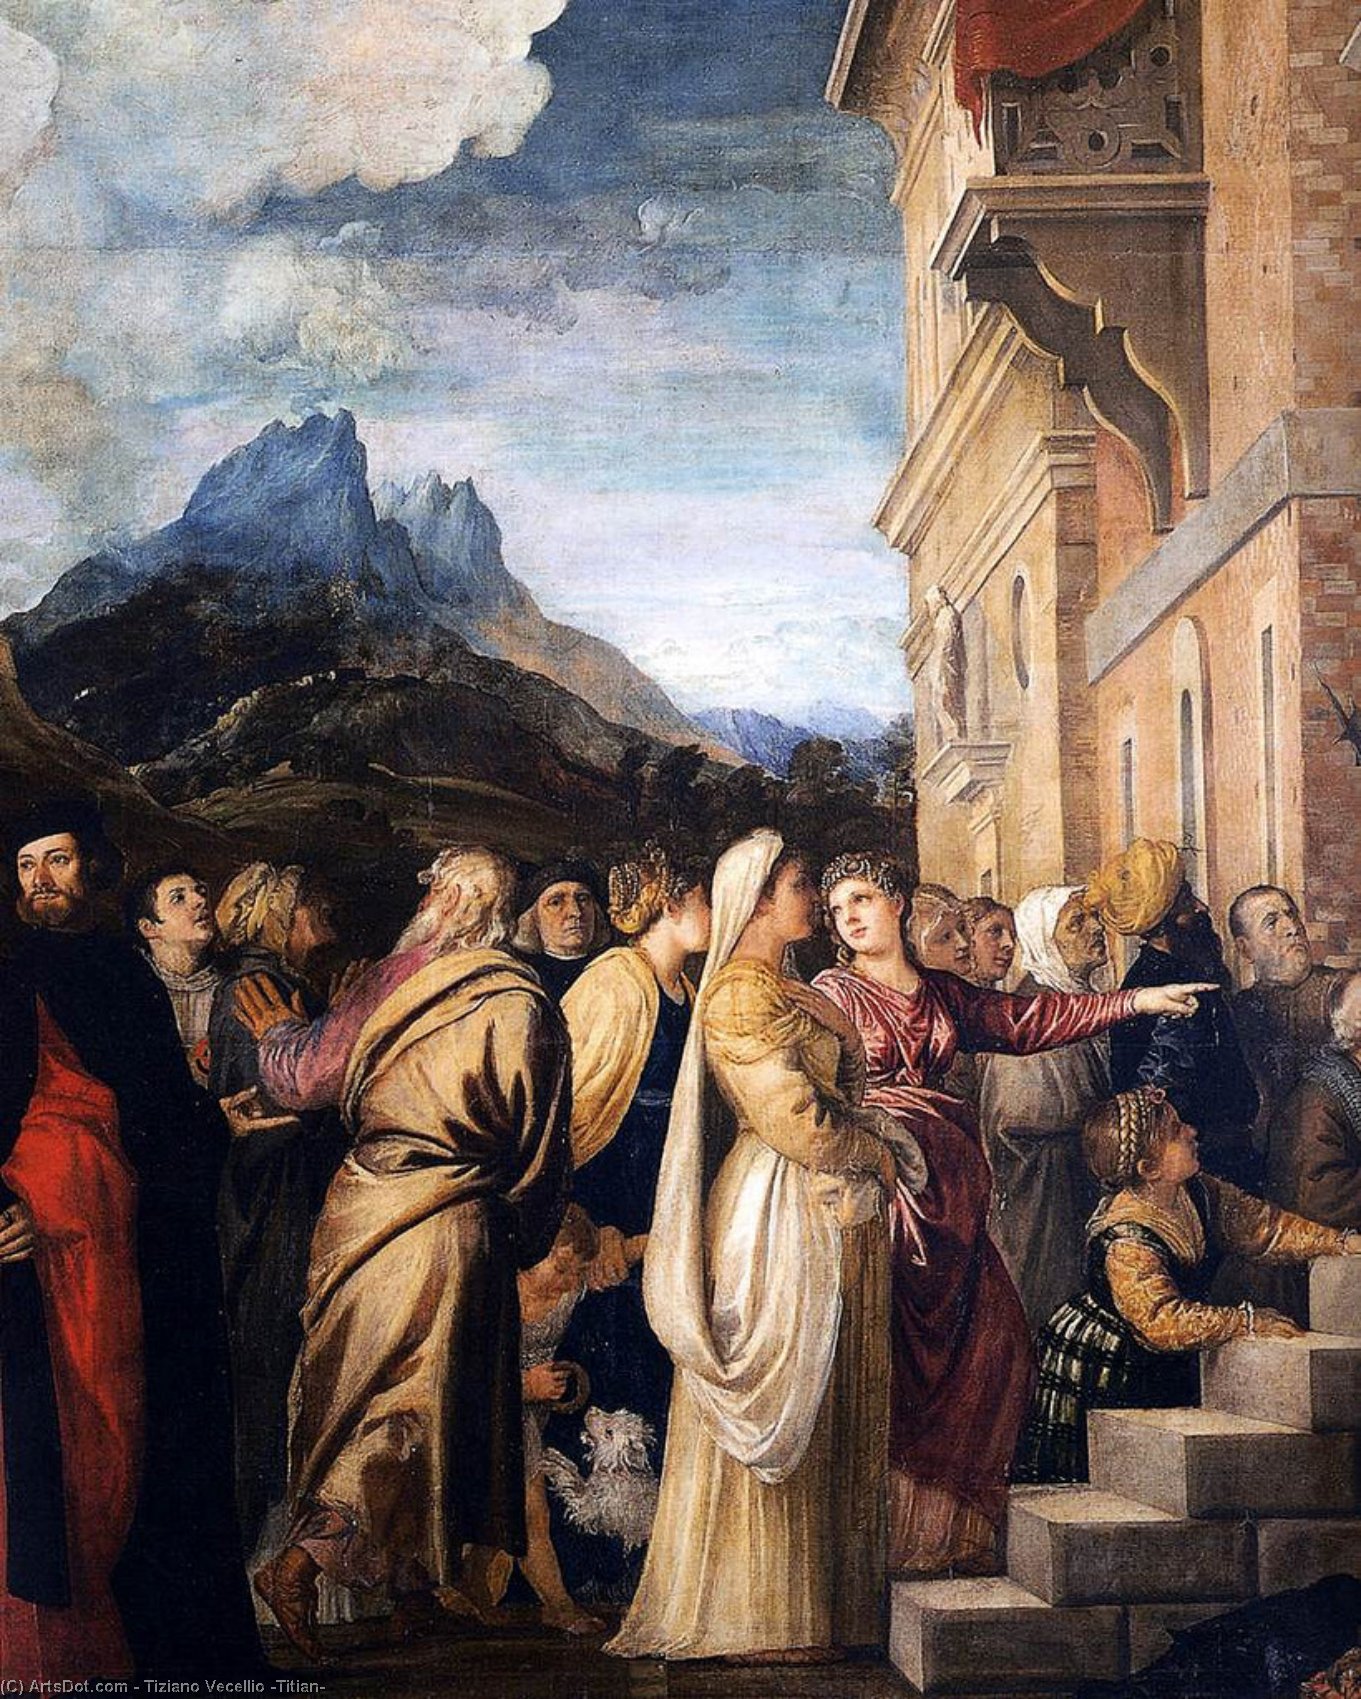 Compra Riproduzioni D'arte Del Museo Presentazione della Vergine al Tempio (particolare), 1534 di Tiziano Vecellio (Titian) (1490-1576, Italy) | ArtsDot.com